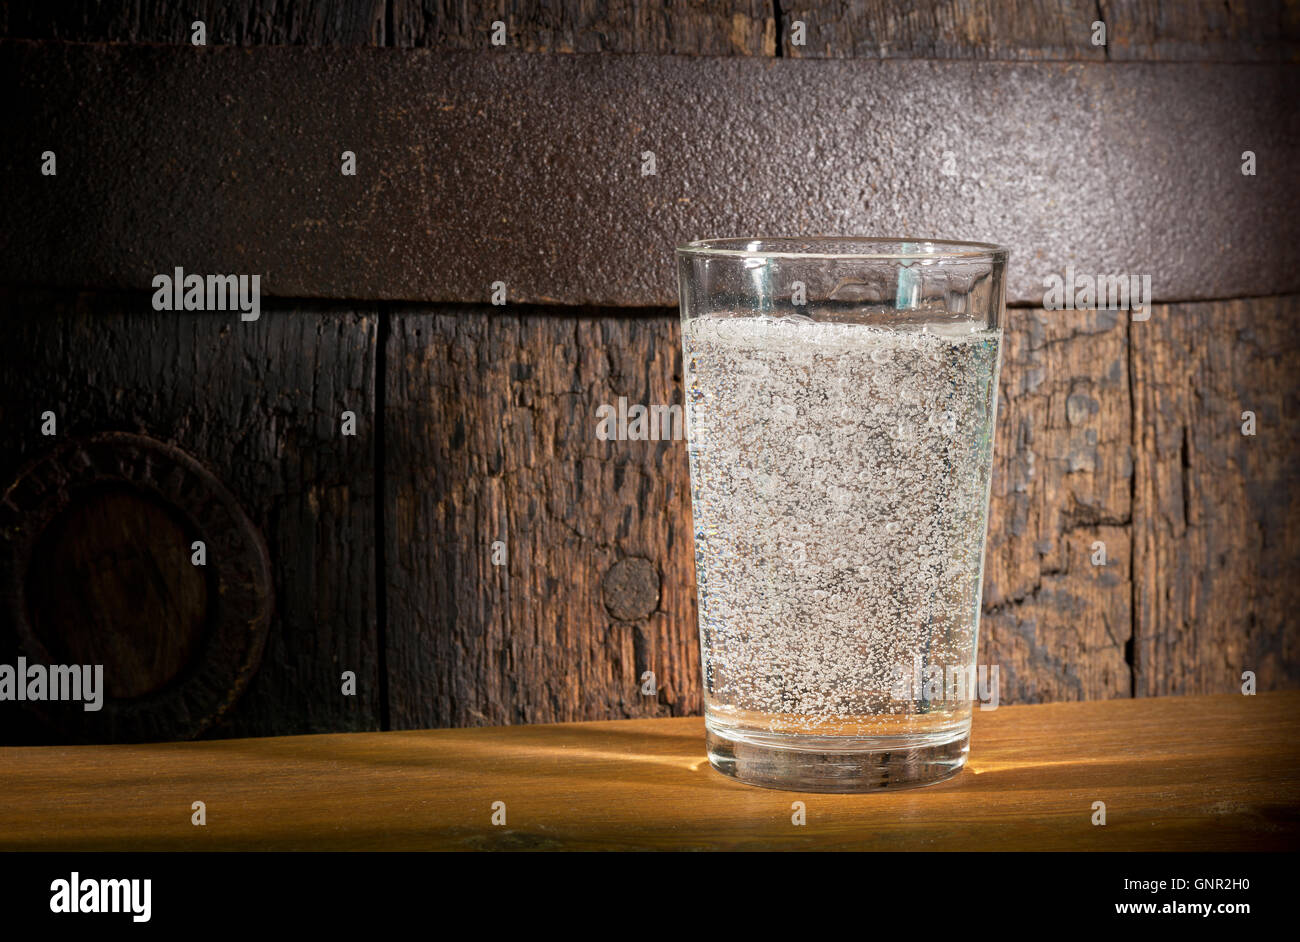 Un vaso de agua mineral en el fondo oscuro Foto de stock